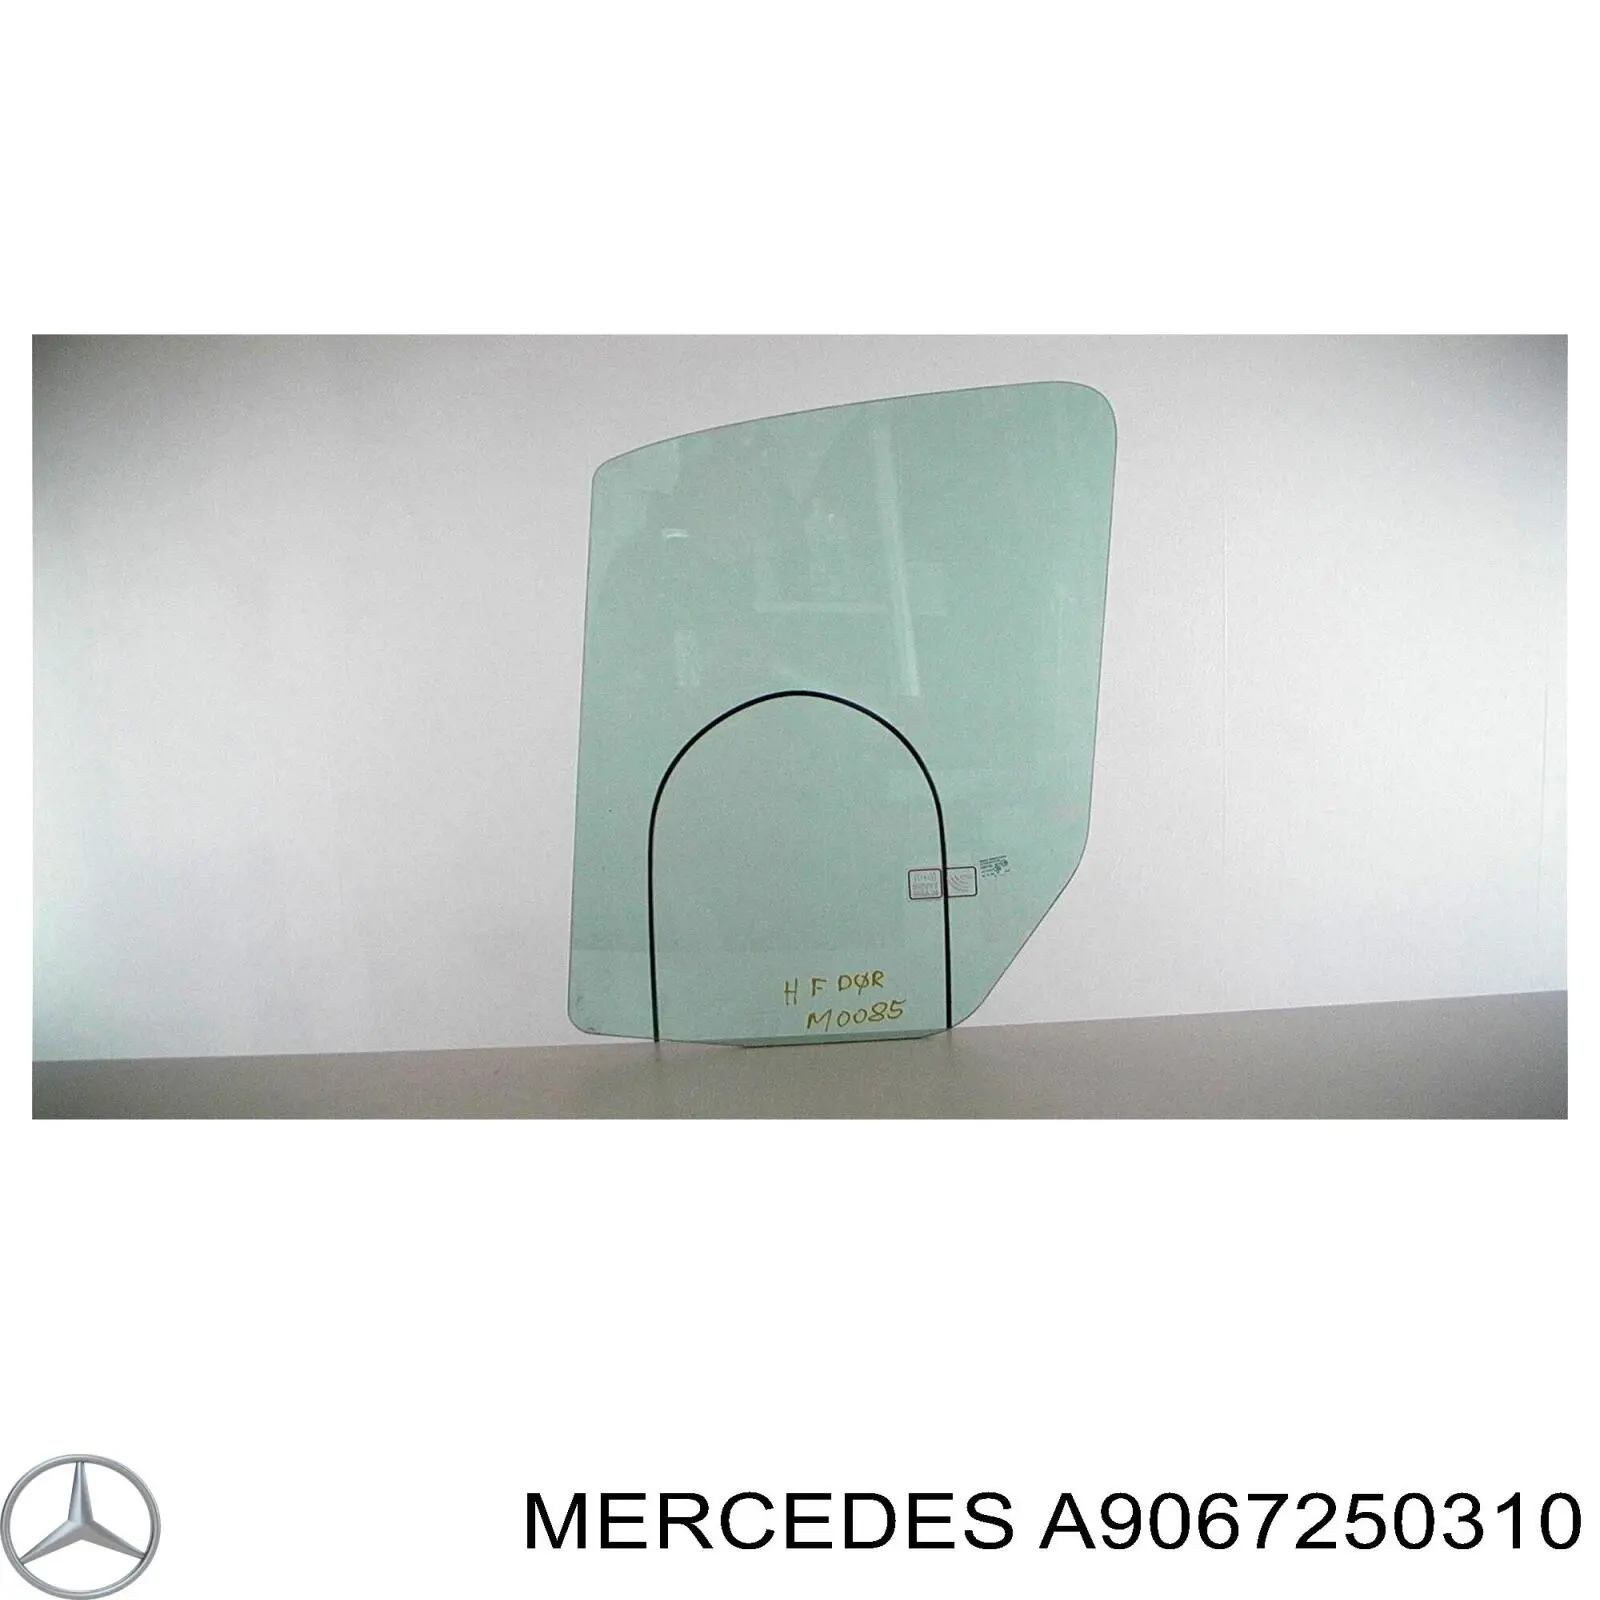 9067250310 Mercedes скло передніх дверей, правою